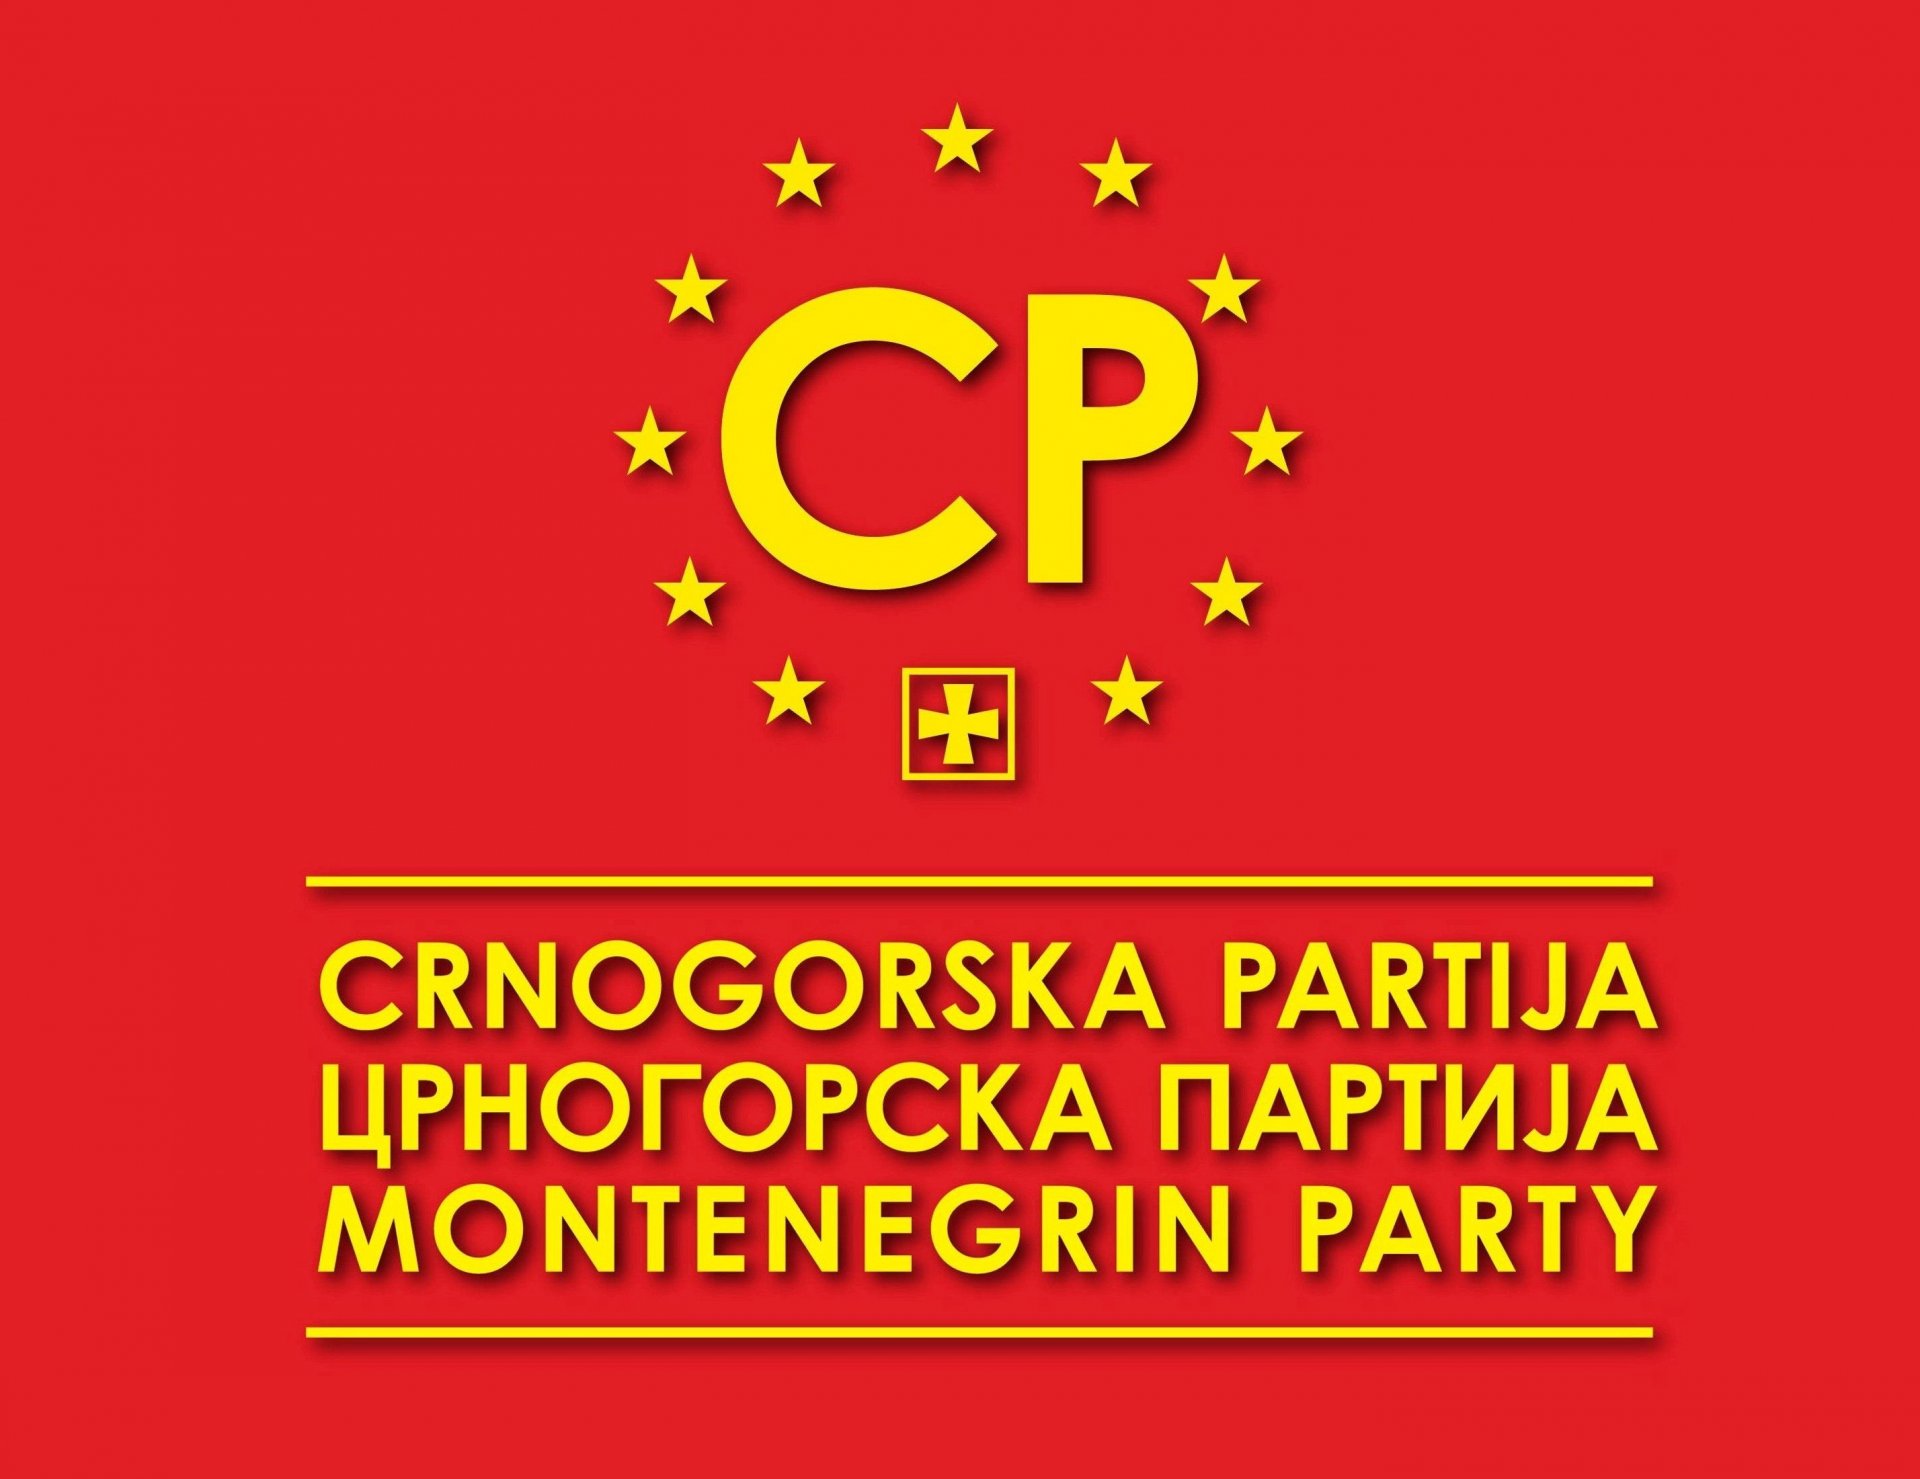 CP: Nacionalni savjet Crnogoraca u Srbiji opstruira projekte koji promovišu crnogorski identitet